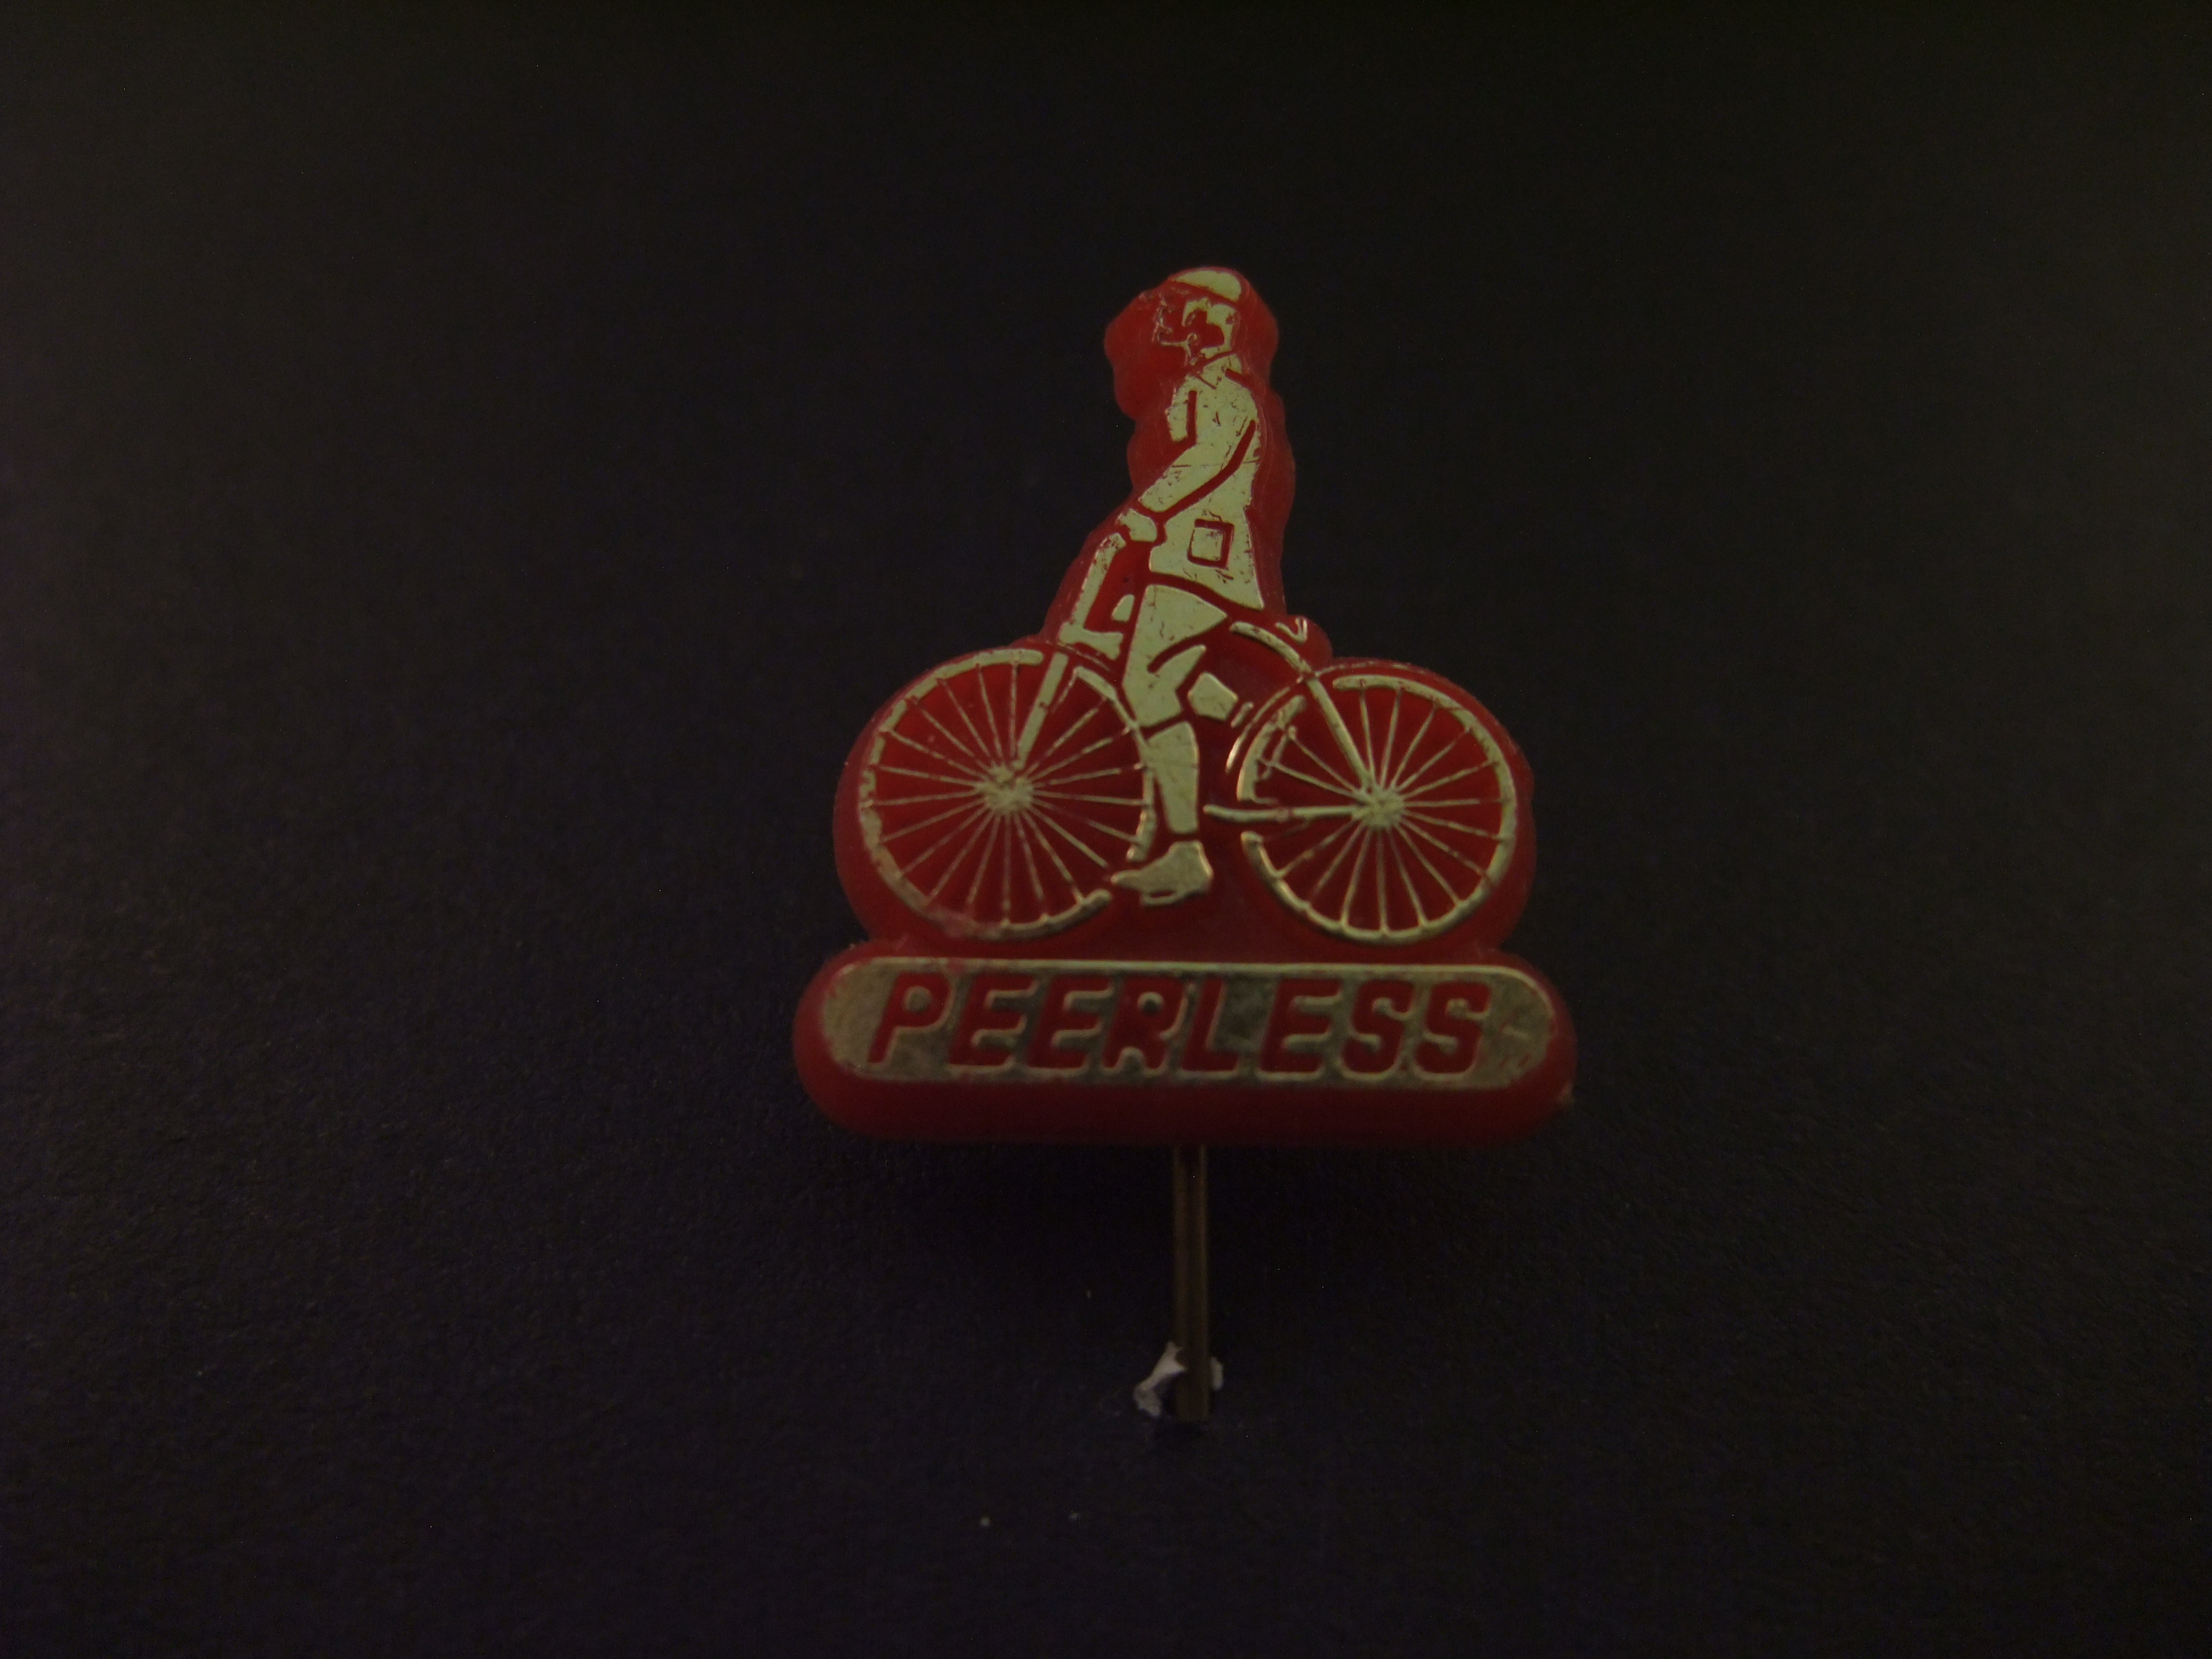 Peerless fietsenfabriek Hilversum rood -goudkleurig